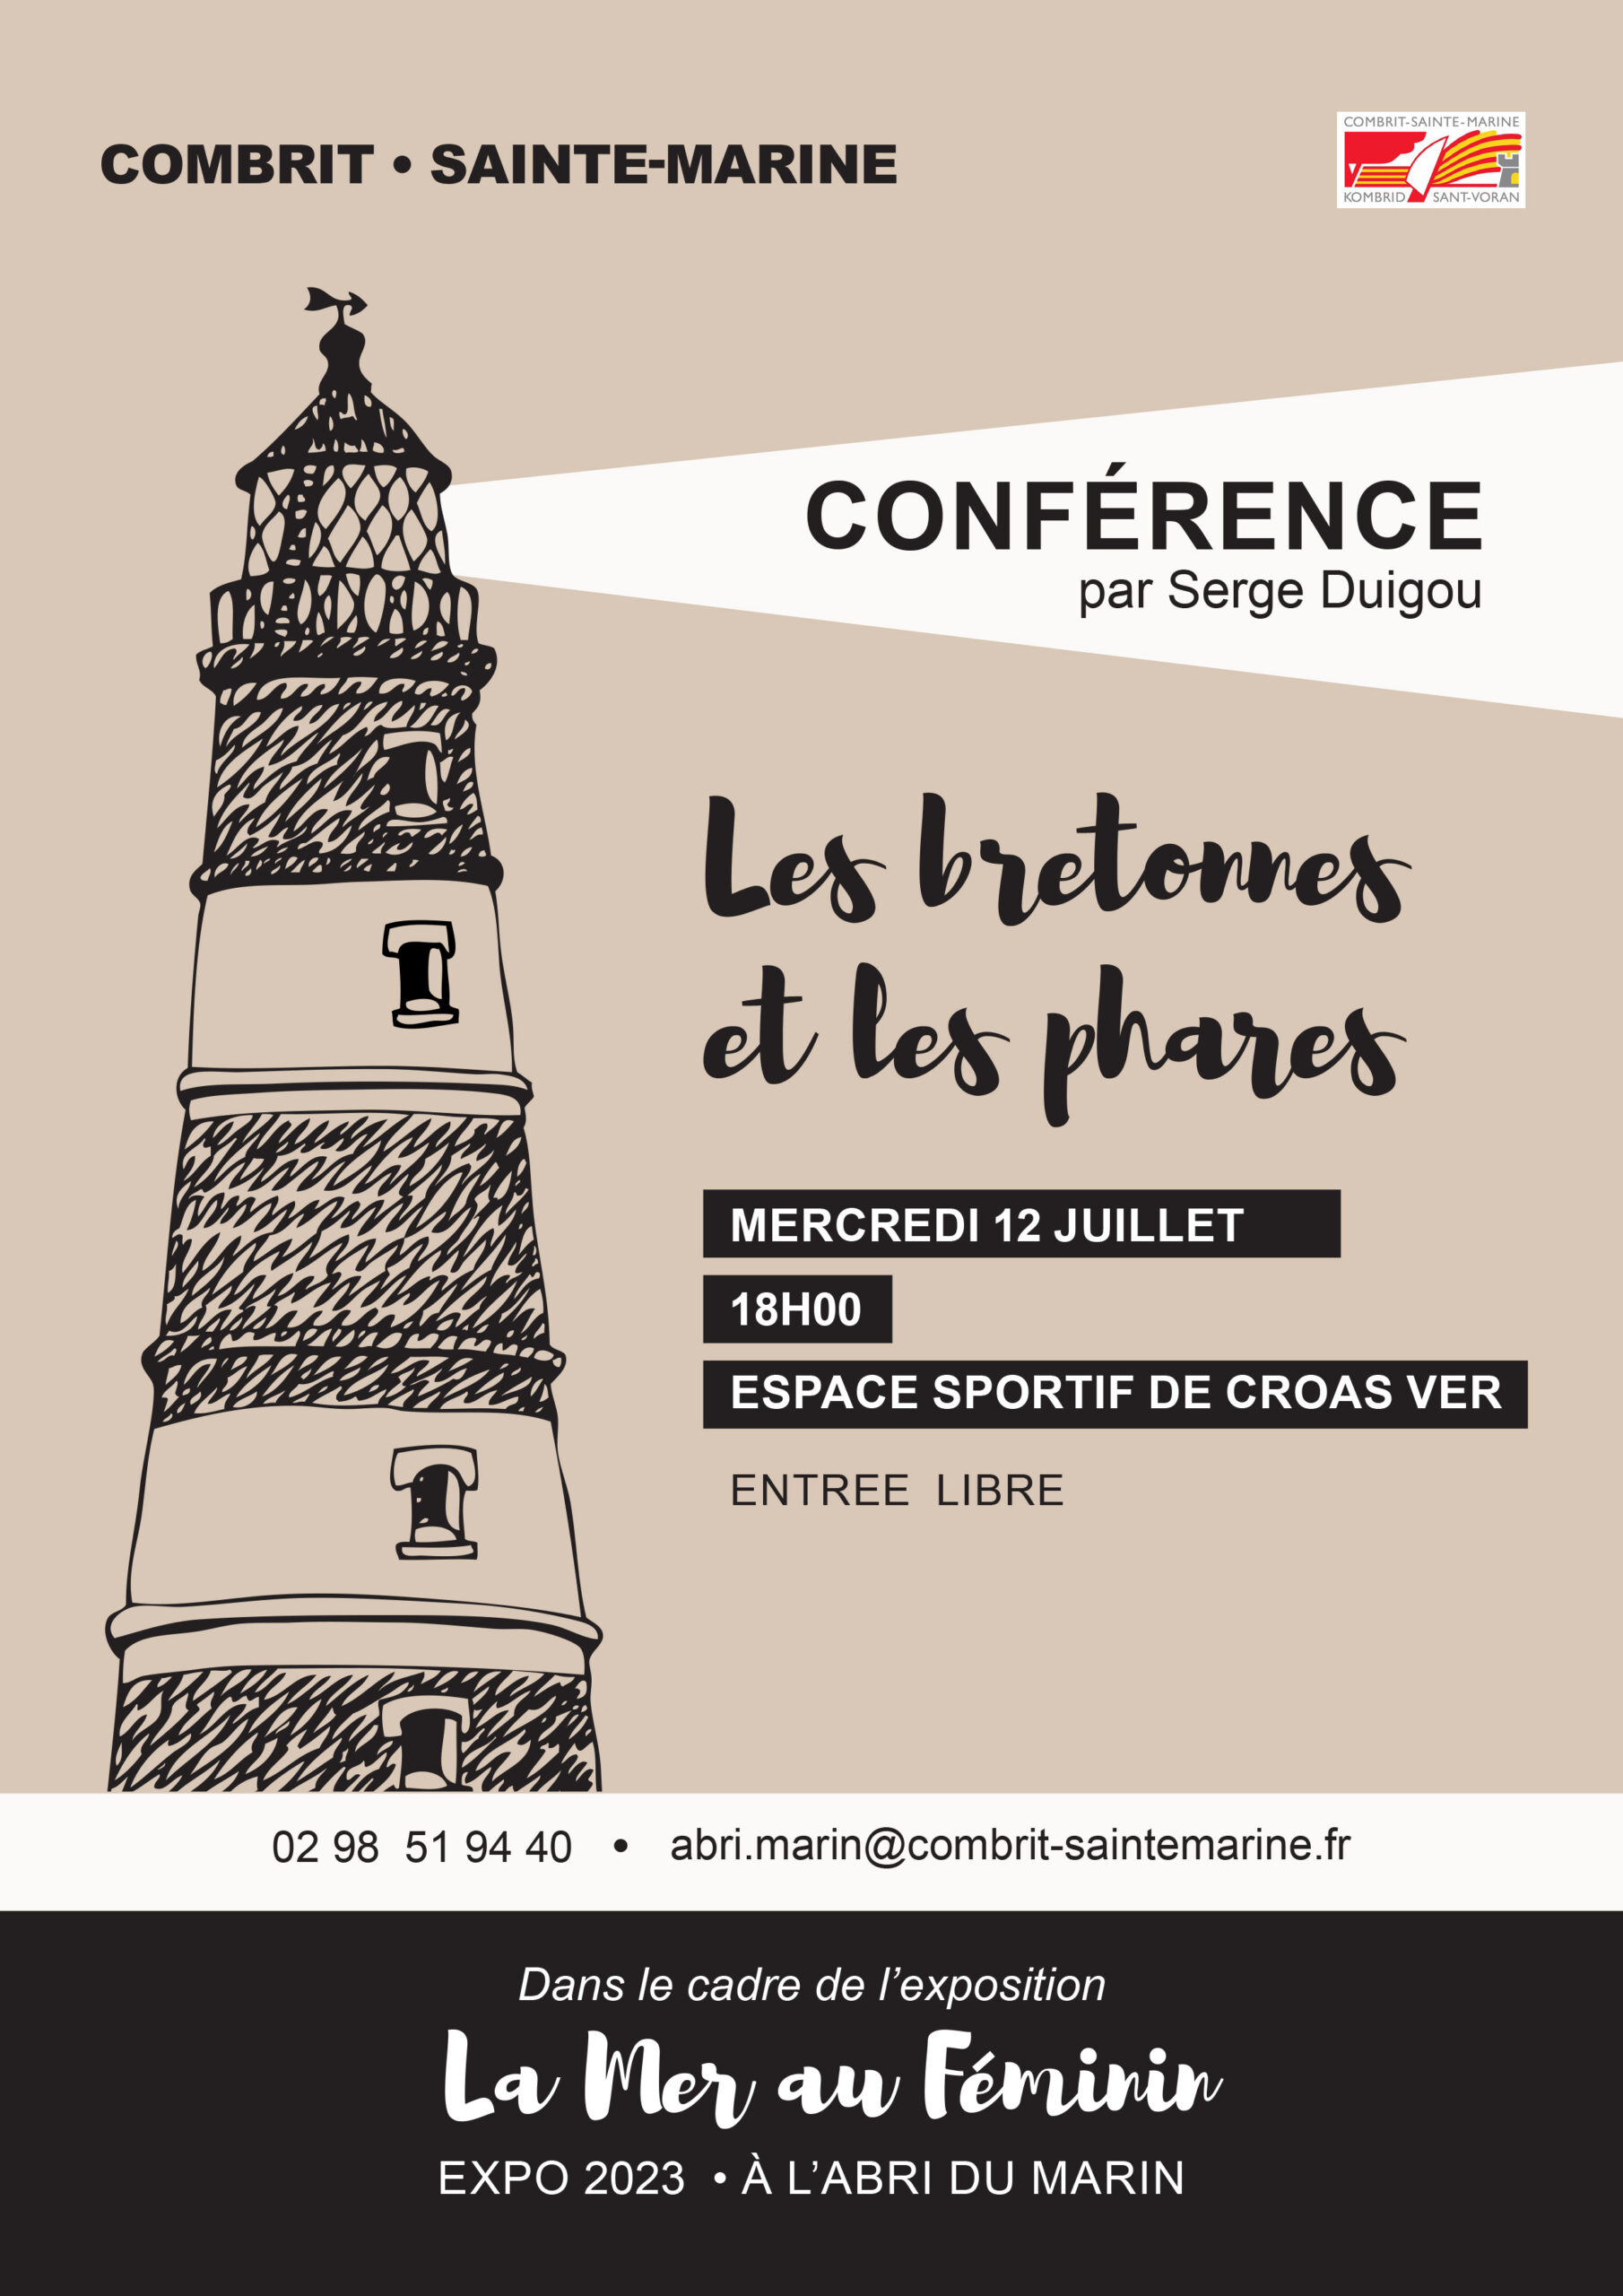 Conférence "Les bretonnes et les phares"